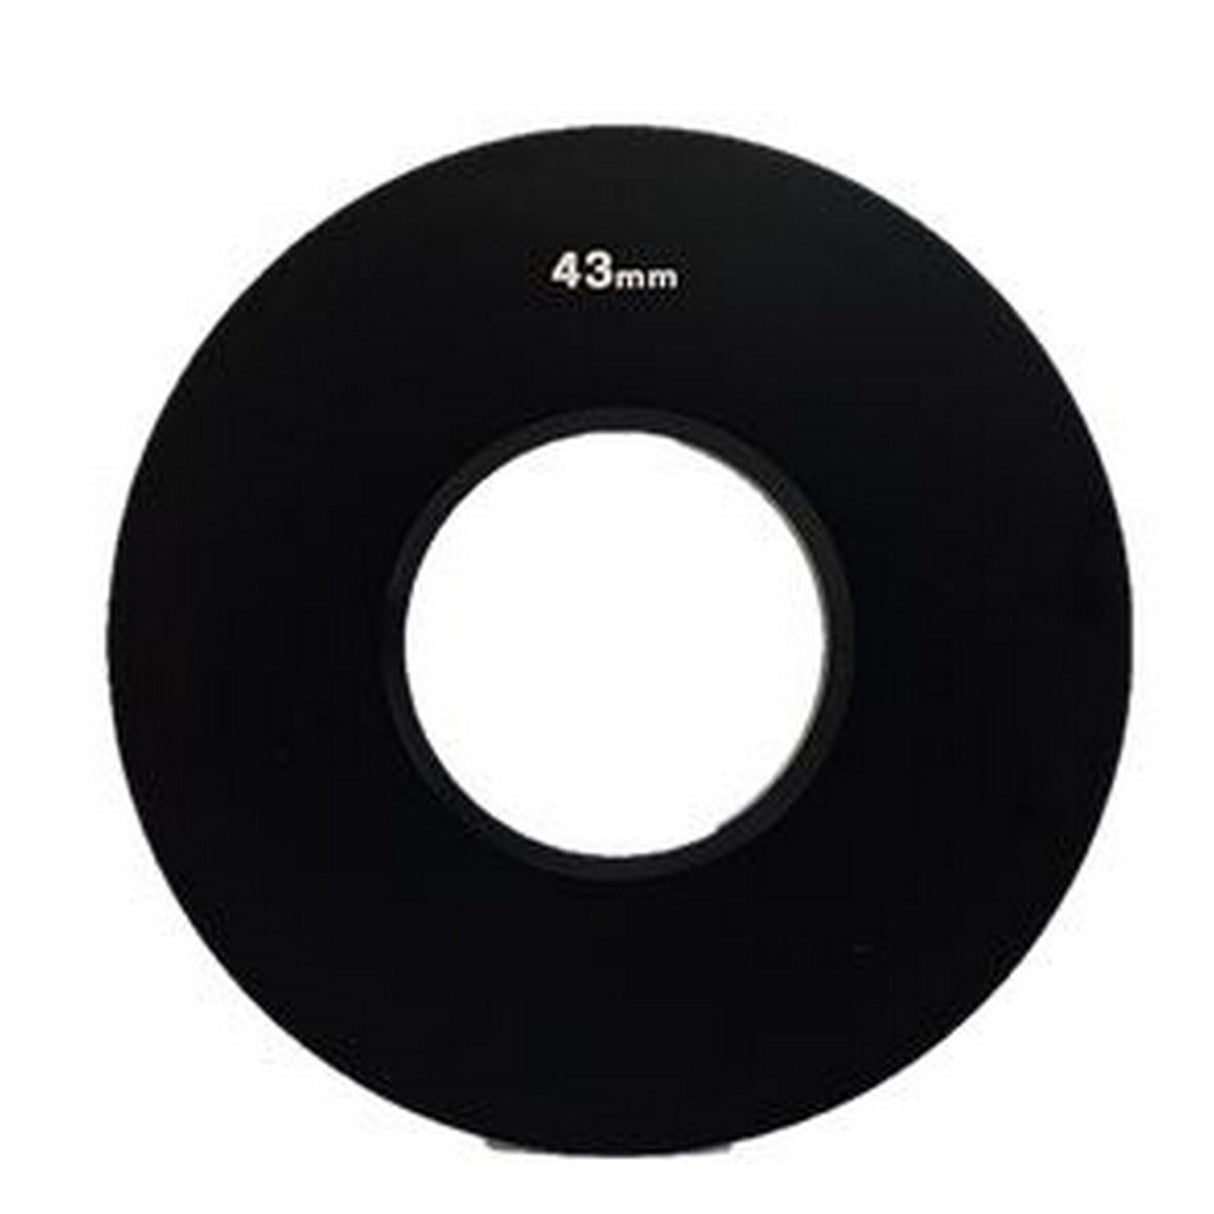 Genustech GAR43 Lens Adapter Ring, 43mm